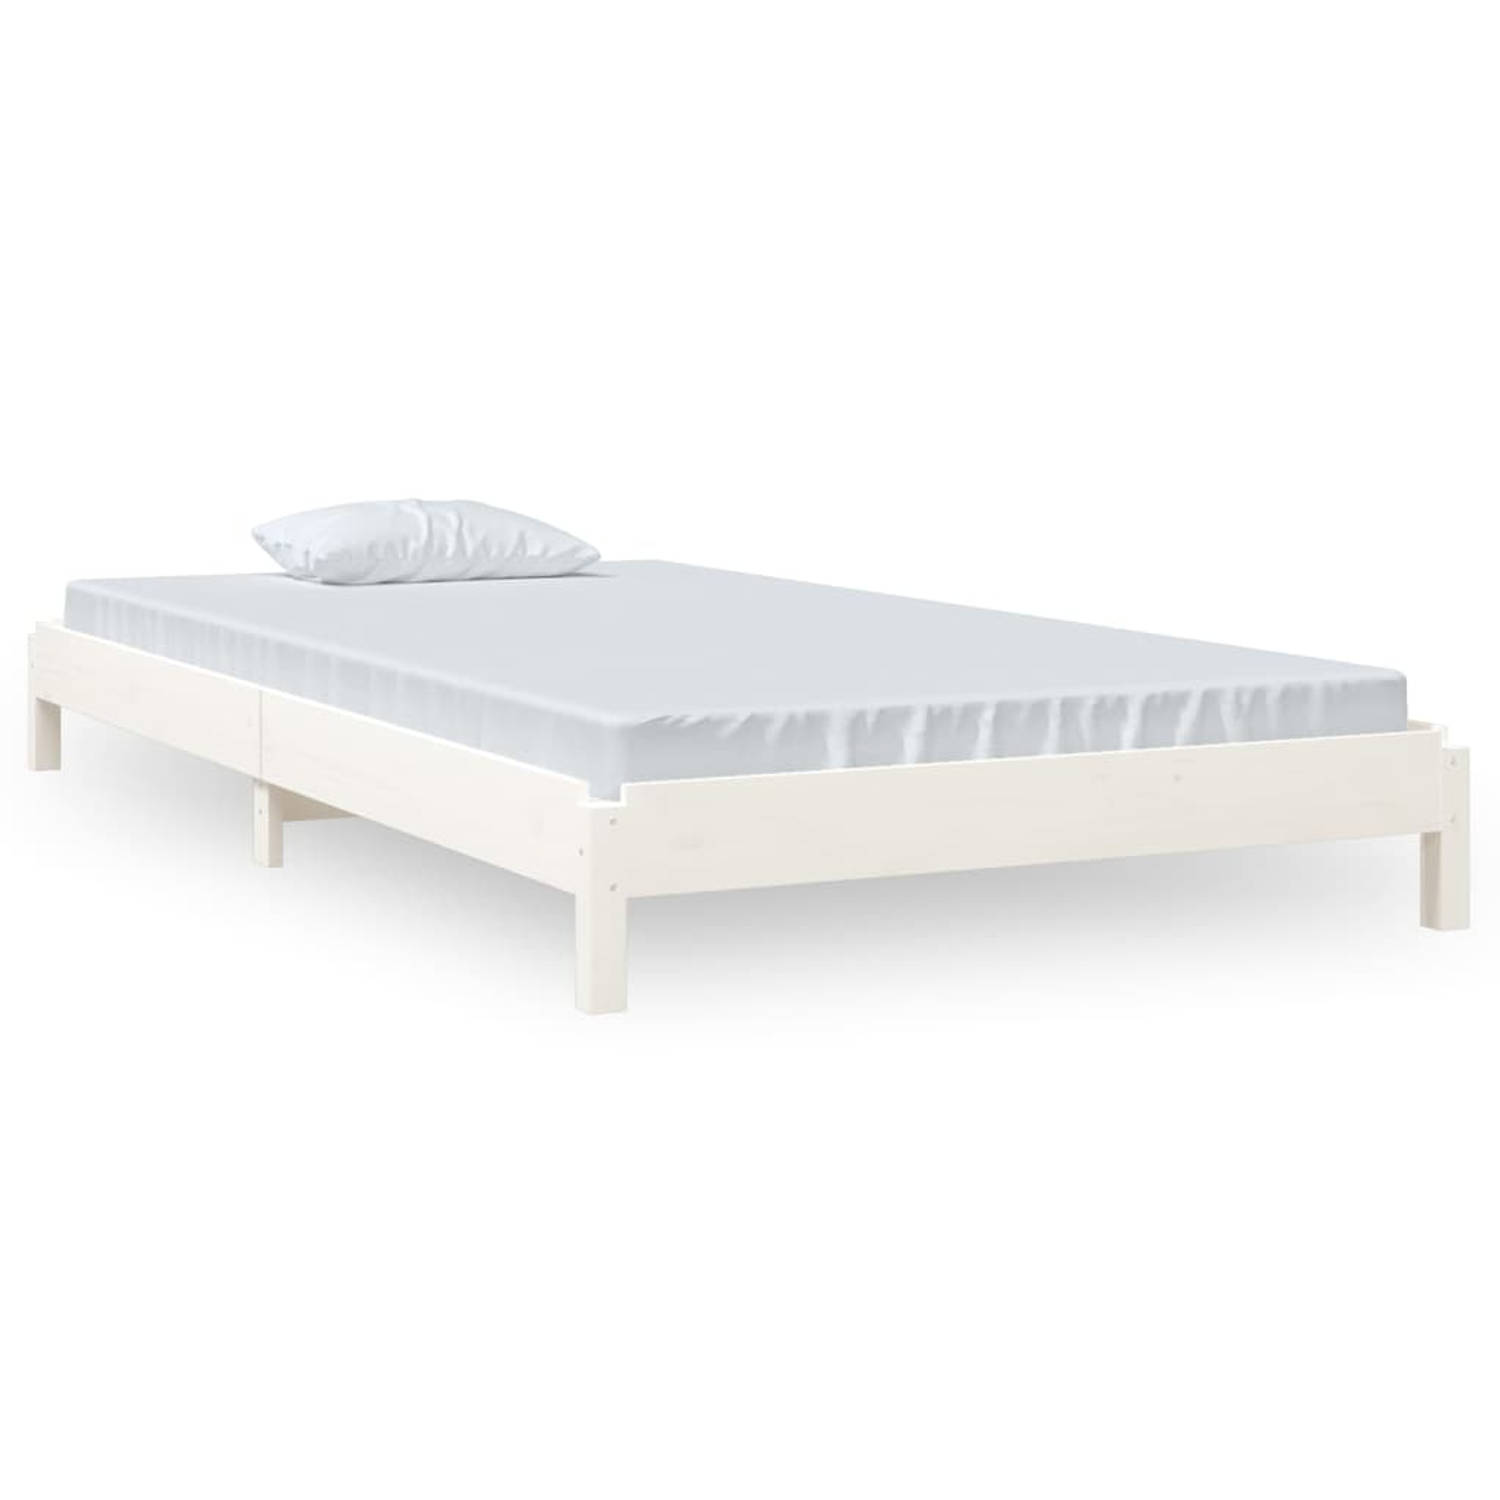 The Living Store Bed stapelbaar 100x200 cm massief grenenhout wit - Stapelbaar Bed - Stapelbare Bedden - Slaapmeubel - Bedframe - Bed - Bedbodem - Eenpersoonsbed - Stapelbed - Mass